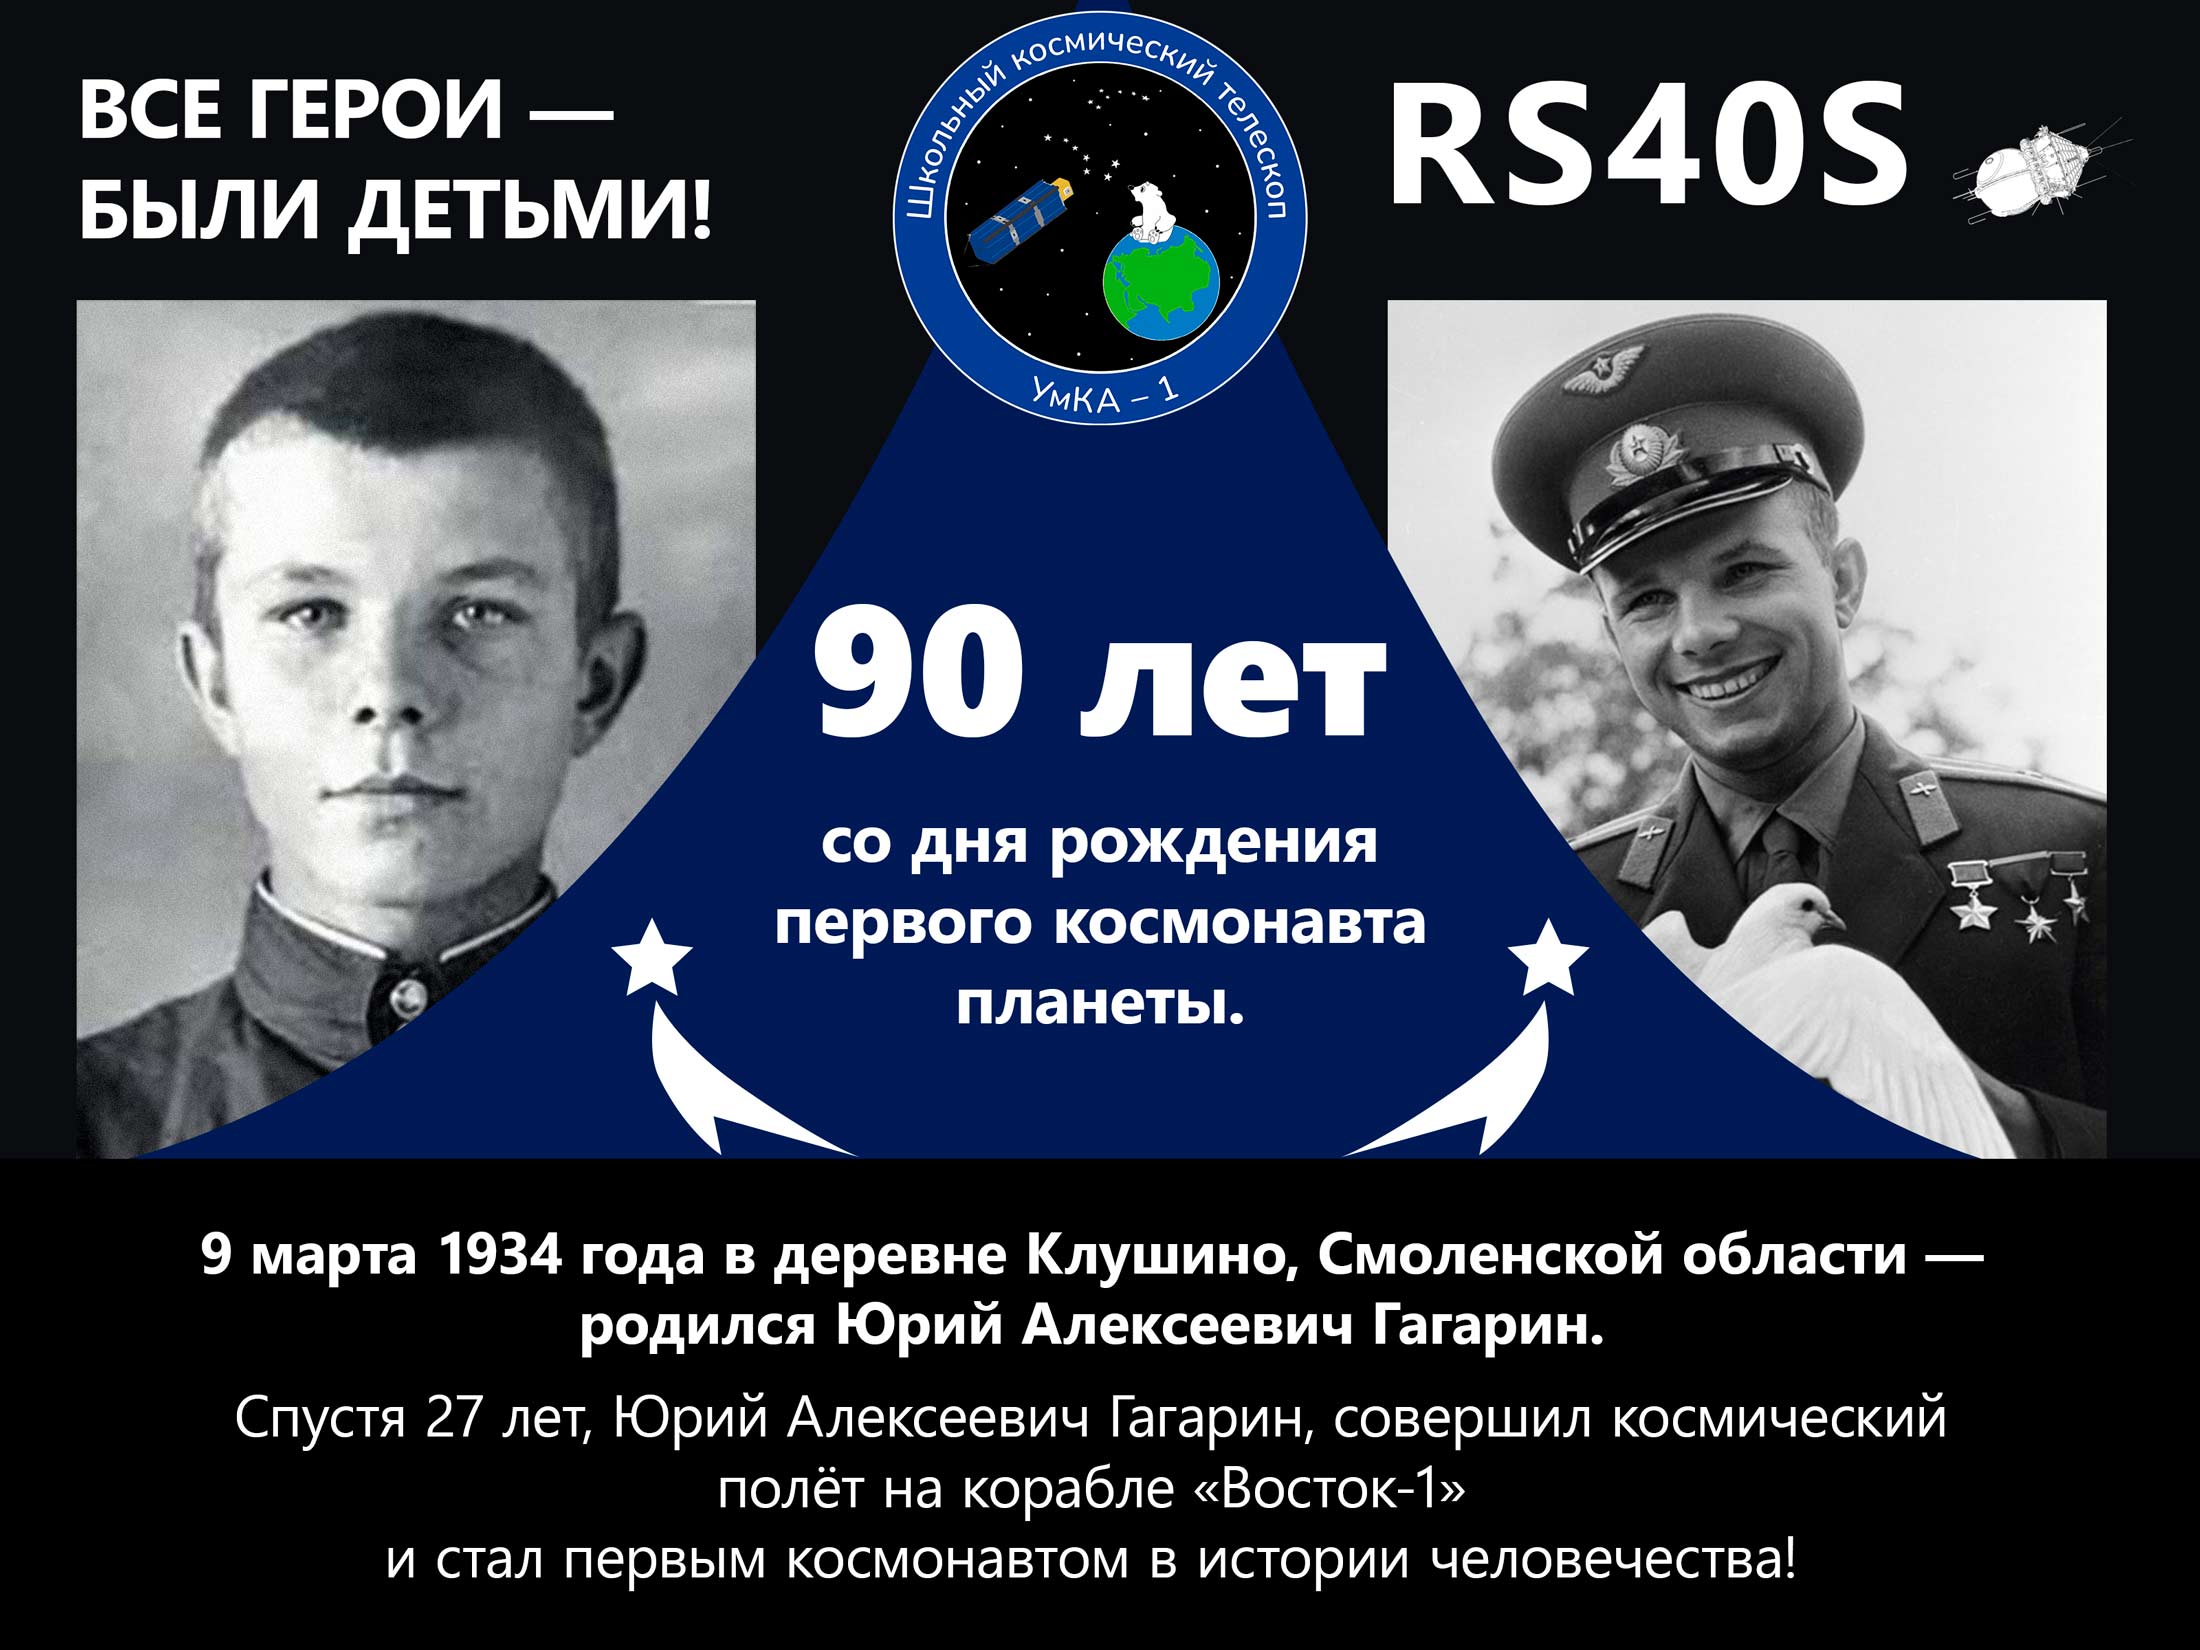 Изображение, транслируемое кубсатом «УмКА-1» в честь Дня рождения Ю. А. Гагарина